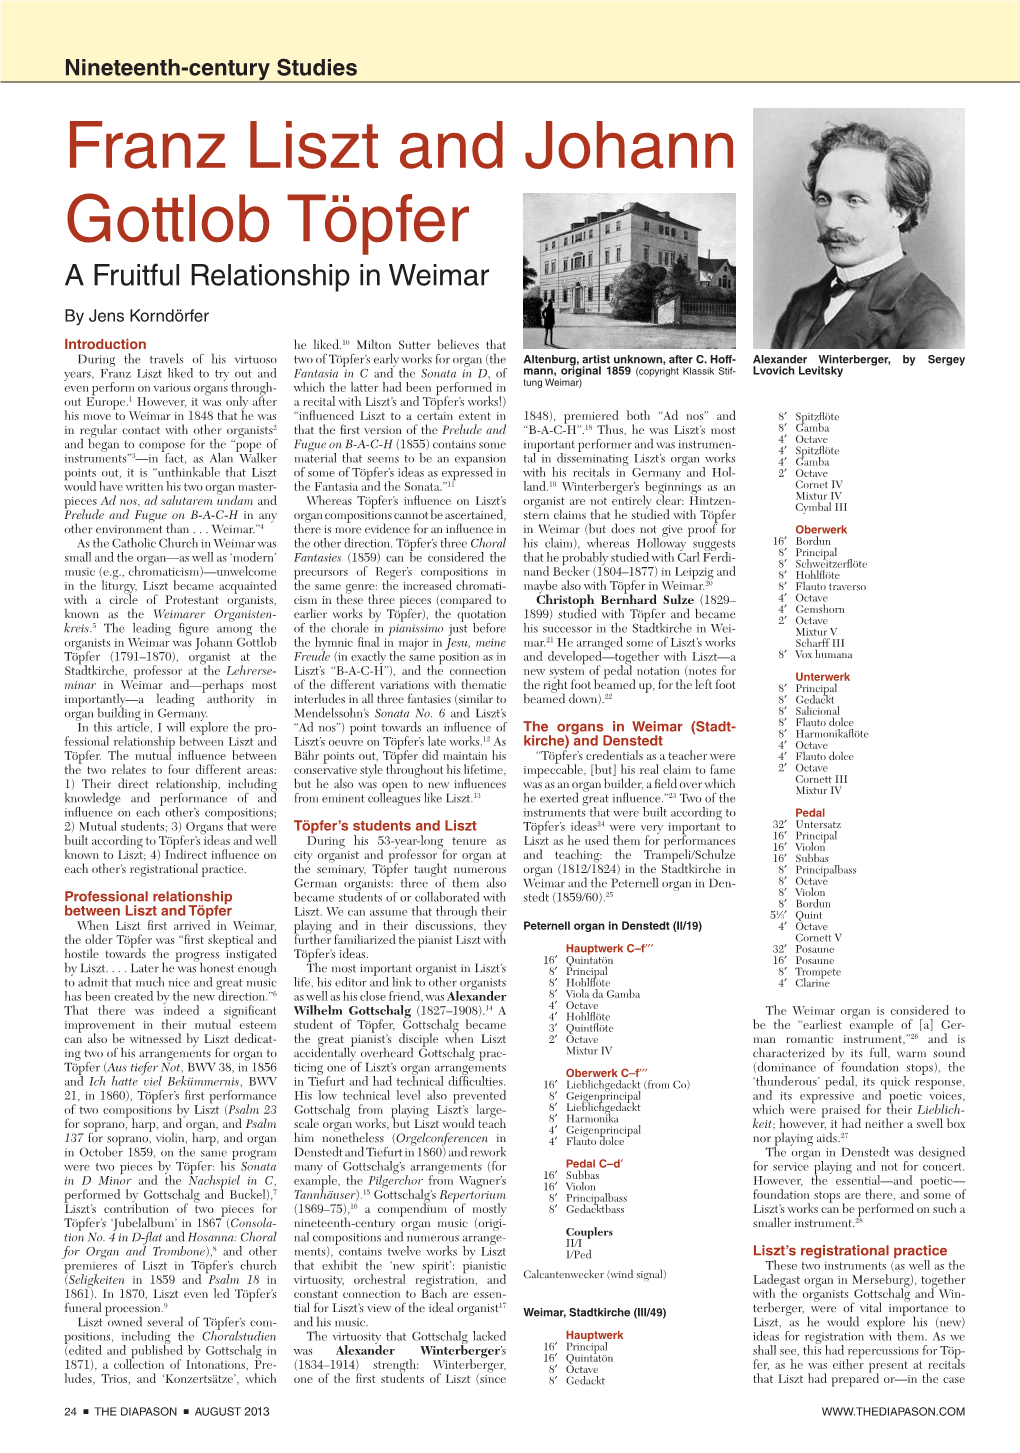 Franz Liszt and Johann Gottlob Töpfer a Fruitful Relationship in Weimar by Jens Korndörfer